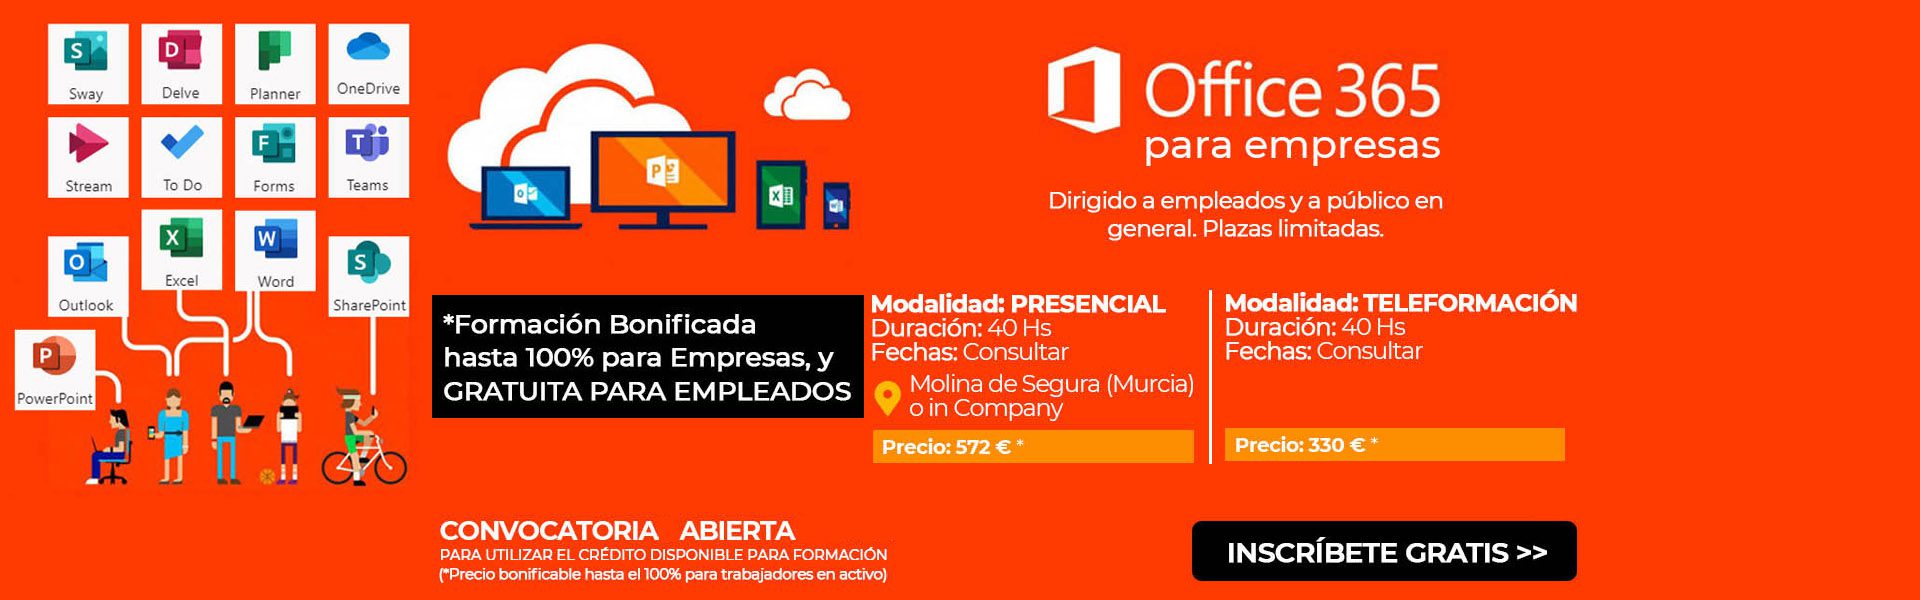 Curso de Microsoft Office 365 para empresas - Corporación